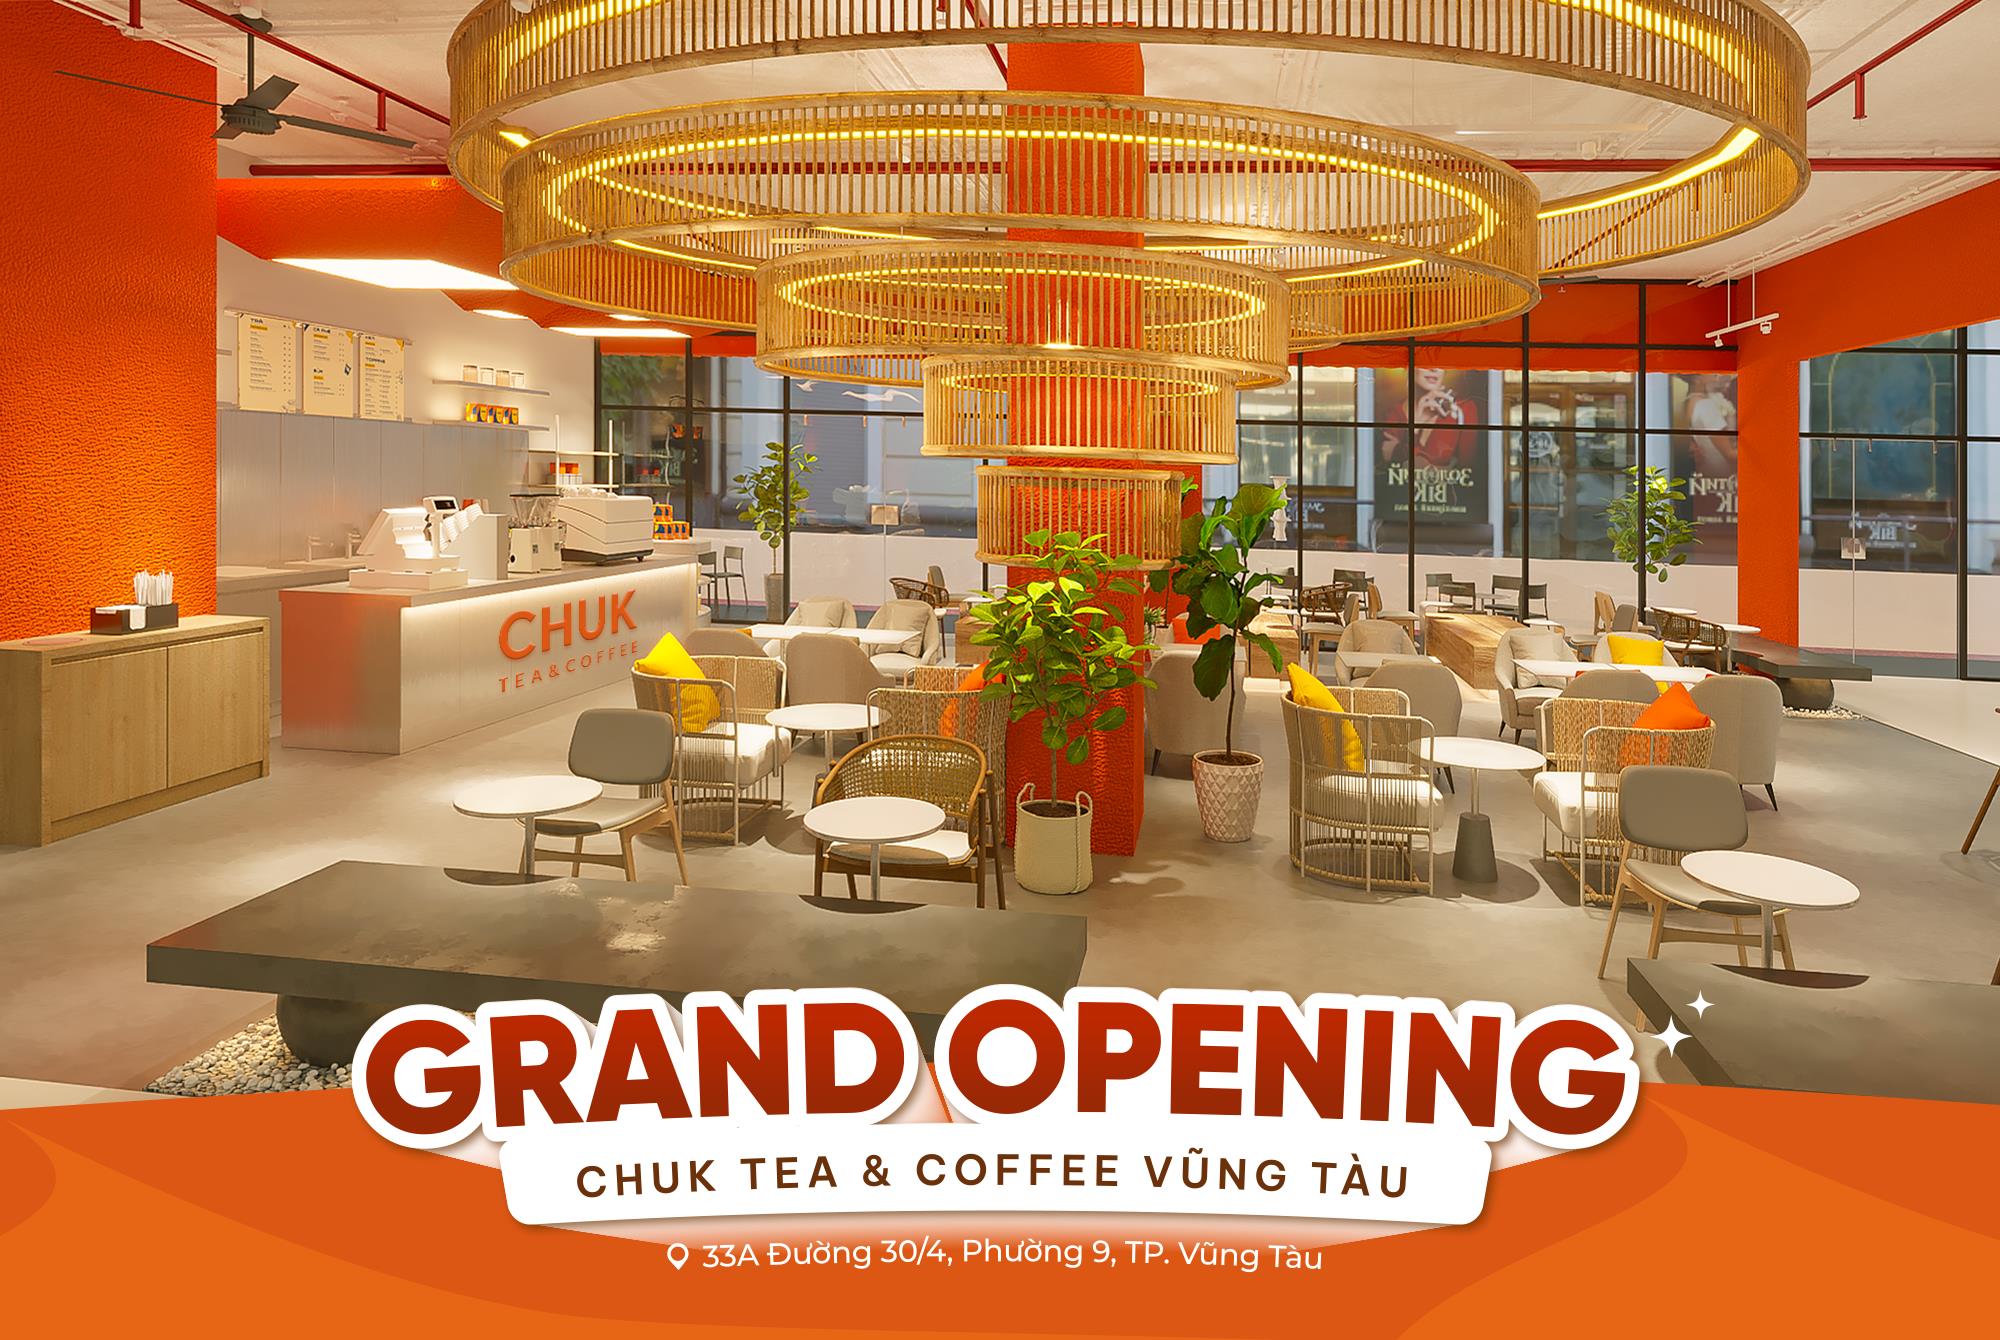 Chuk Tea & Coffee chính thức chào sân tại 2 thành phố Bà Rịa và Vũng Tàu - Ảnh 2.